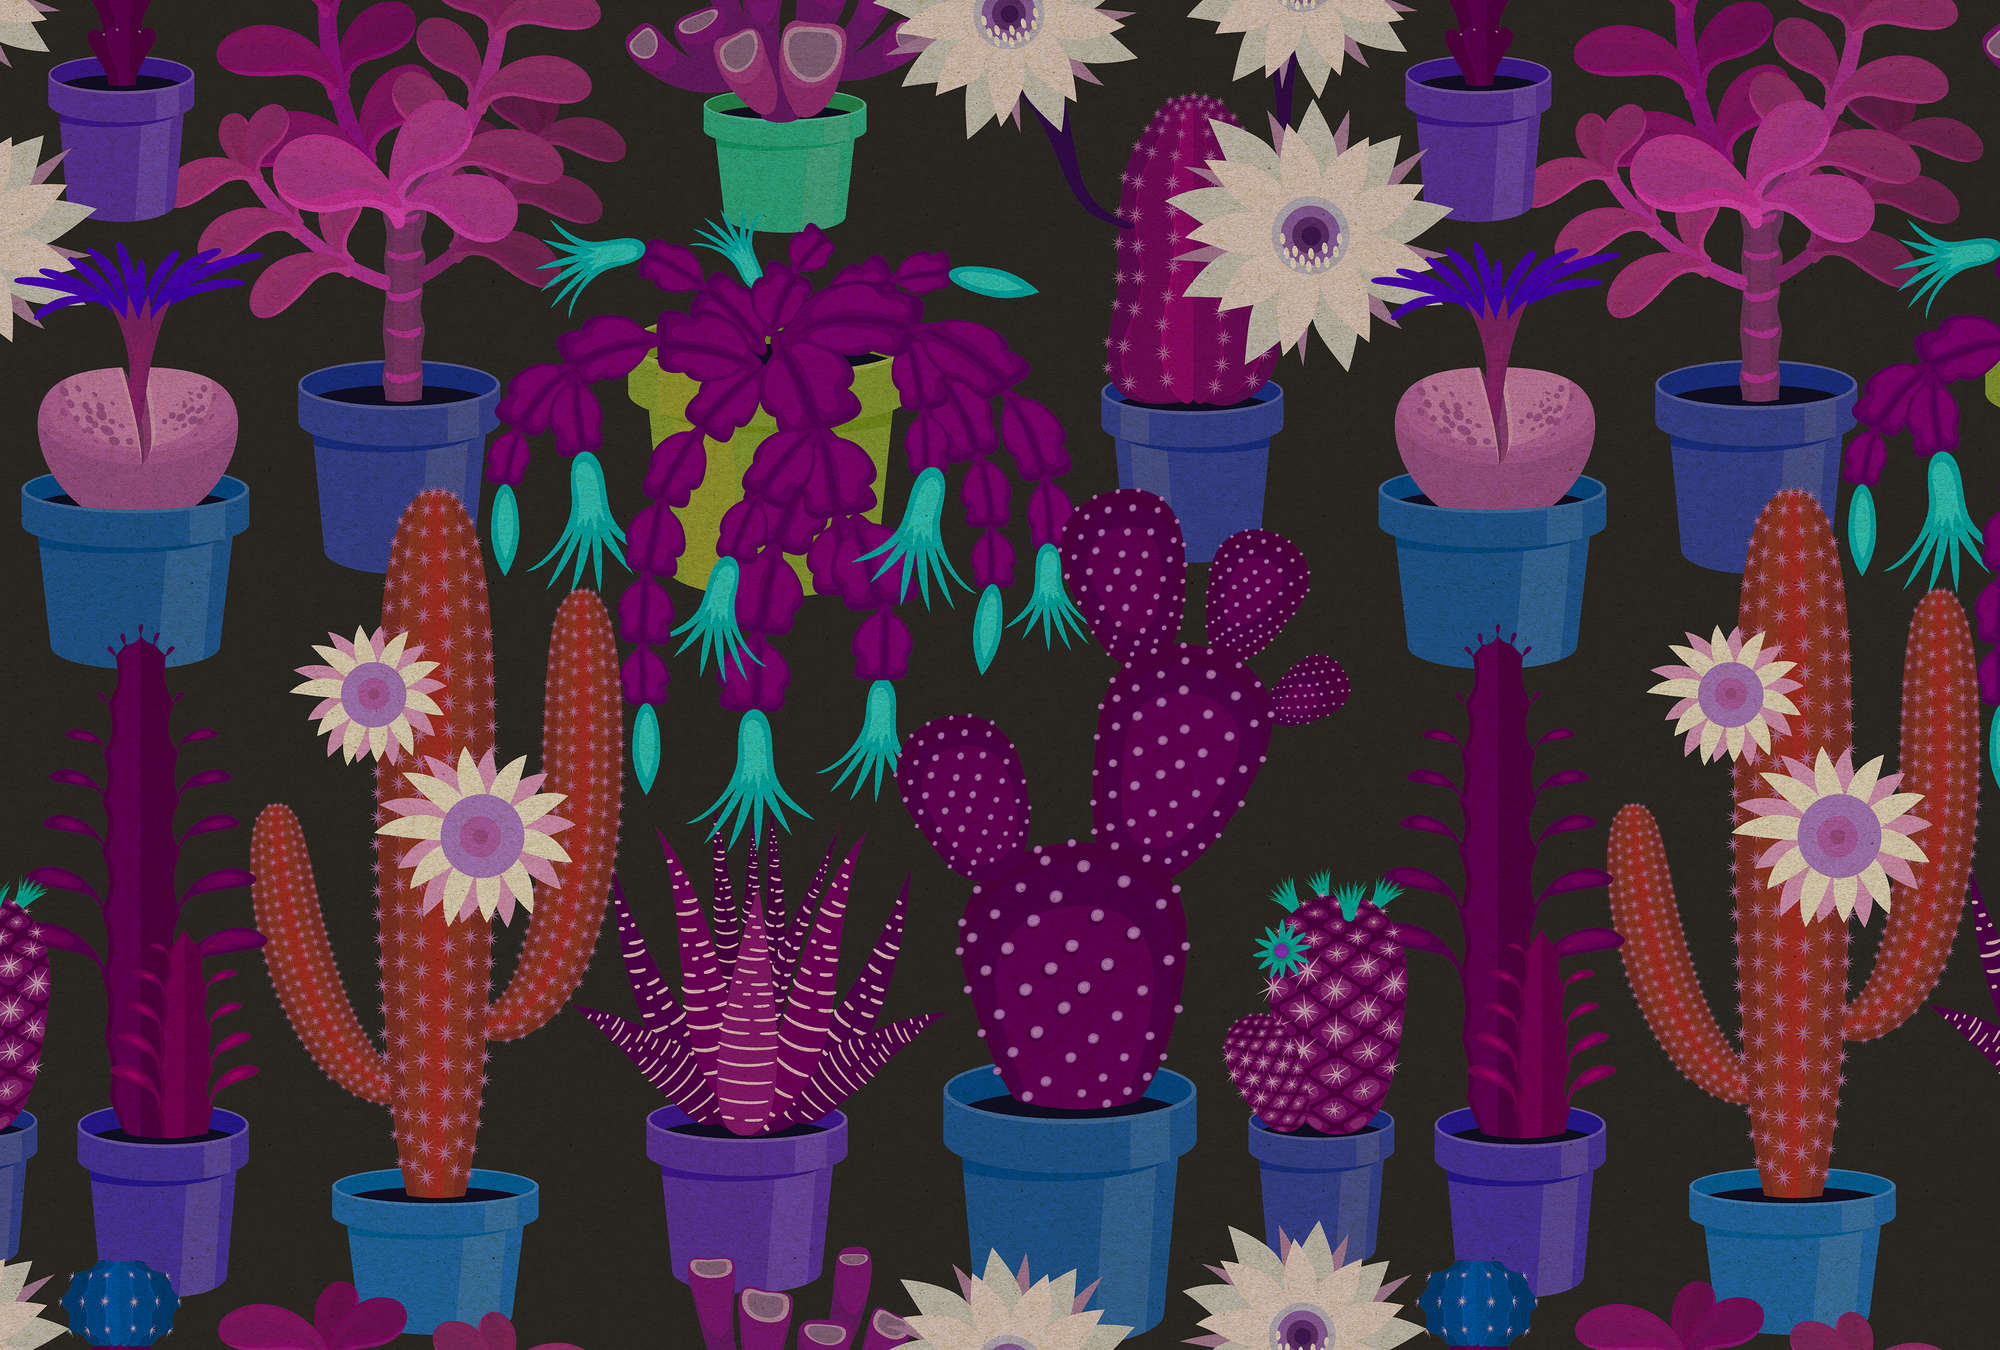             Cactustuin 1 - behang in kartonnen structuur met kleurrijke cactussen in komische stijl - blauw, oranje | parelmoer glad vlies
        